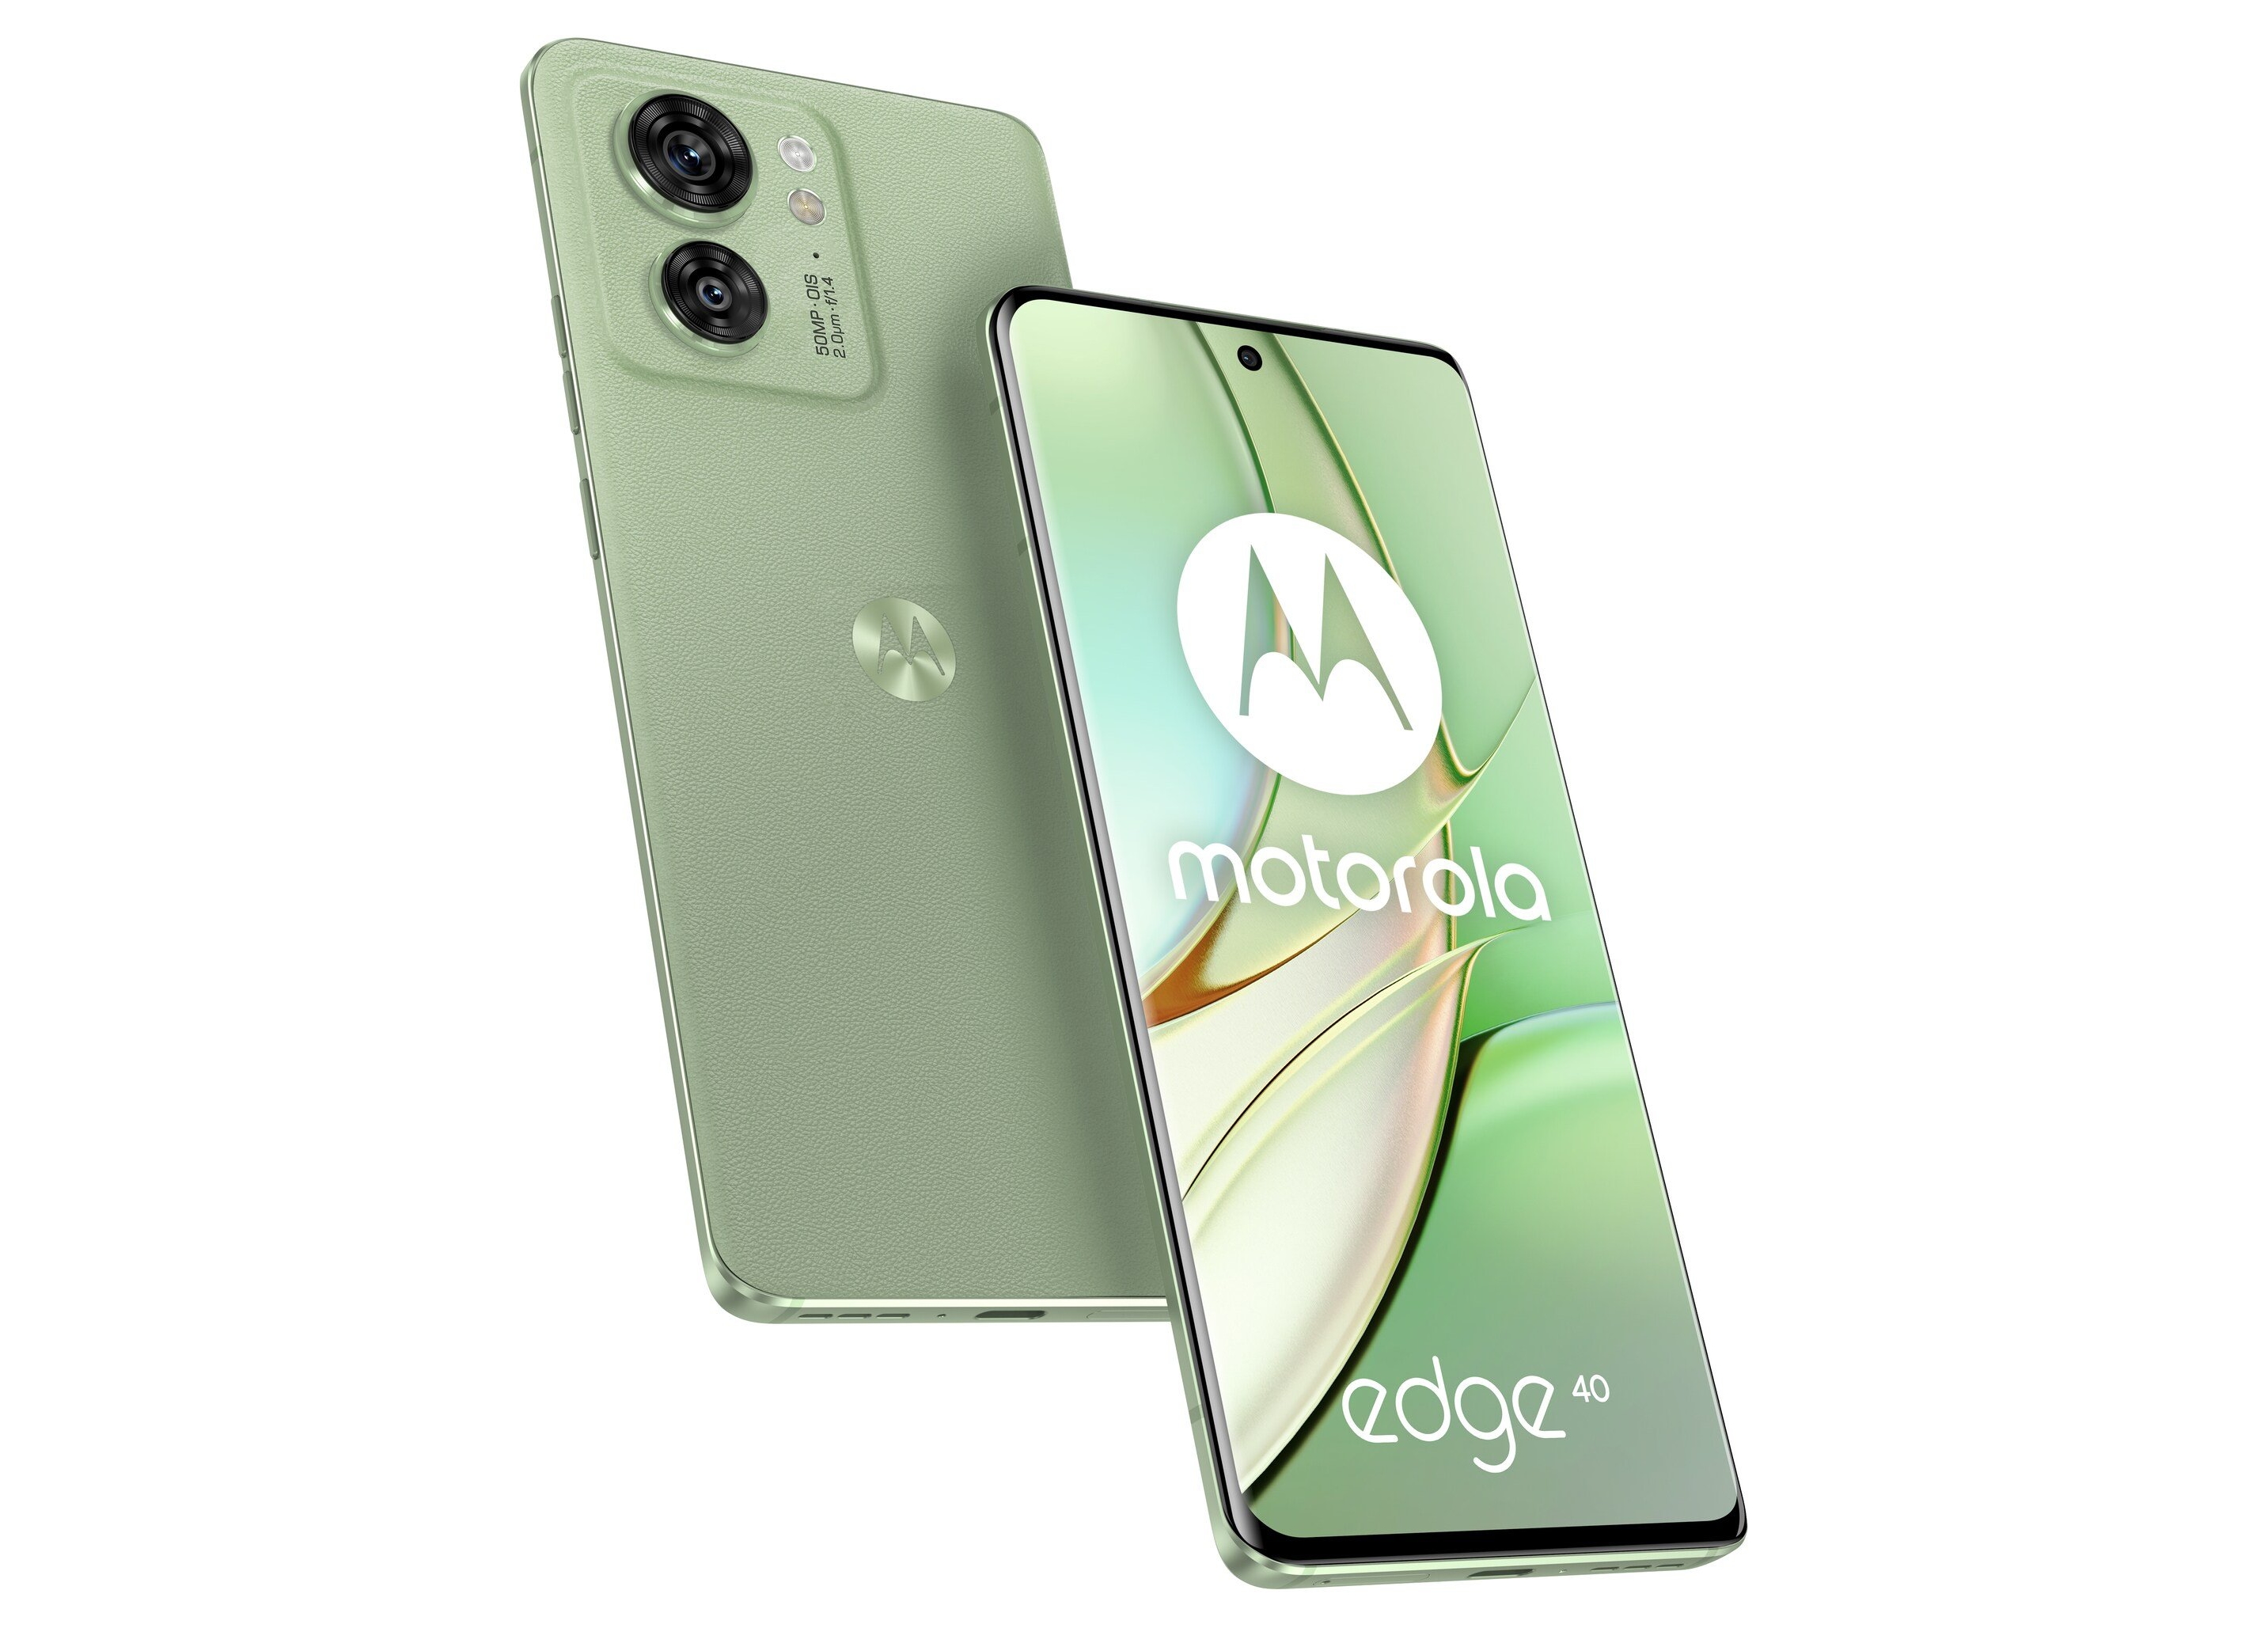 Schermo perforato, doppia fotocamera, quattro colori e pannello posteriore in pelle: sono emersi online i rendering di alta qualità del Motorola Edge 40.